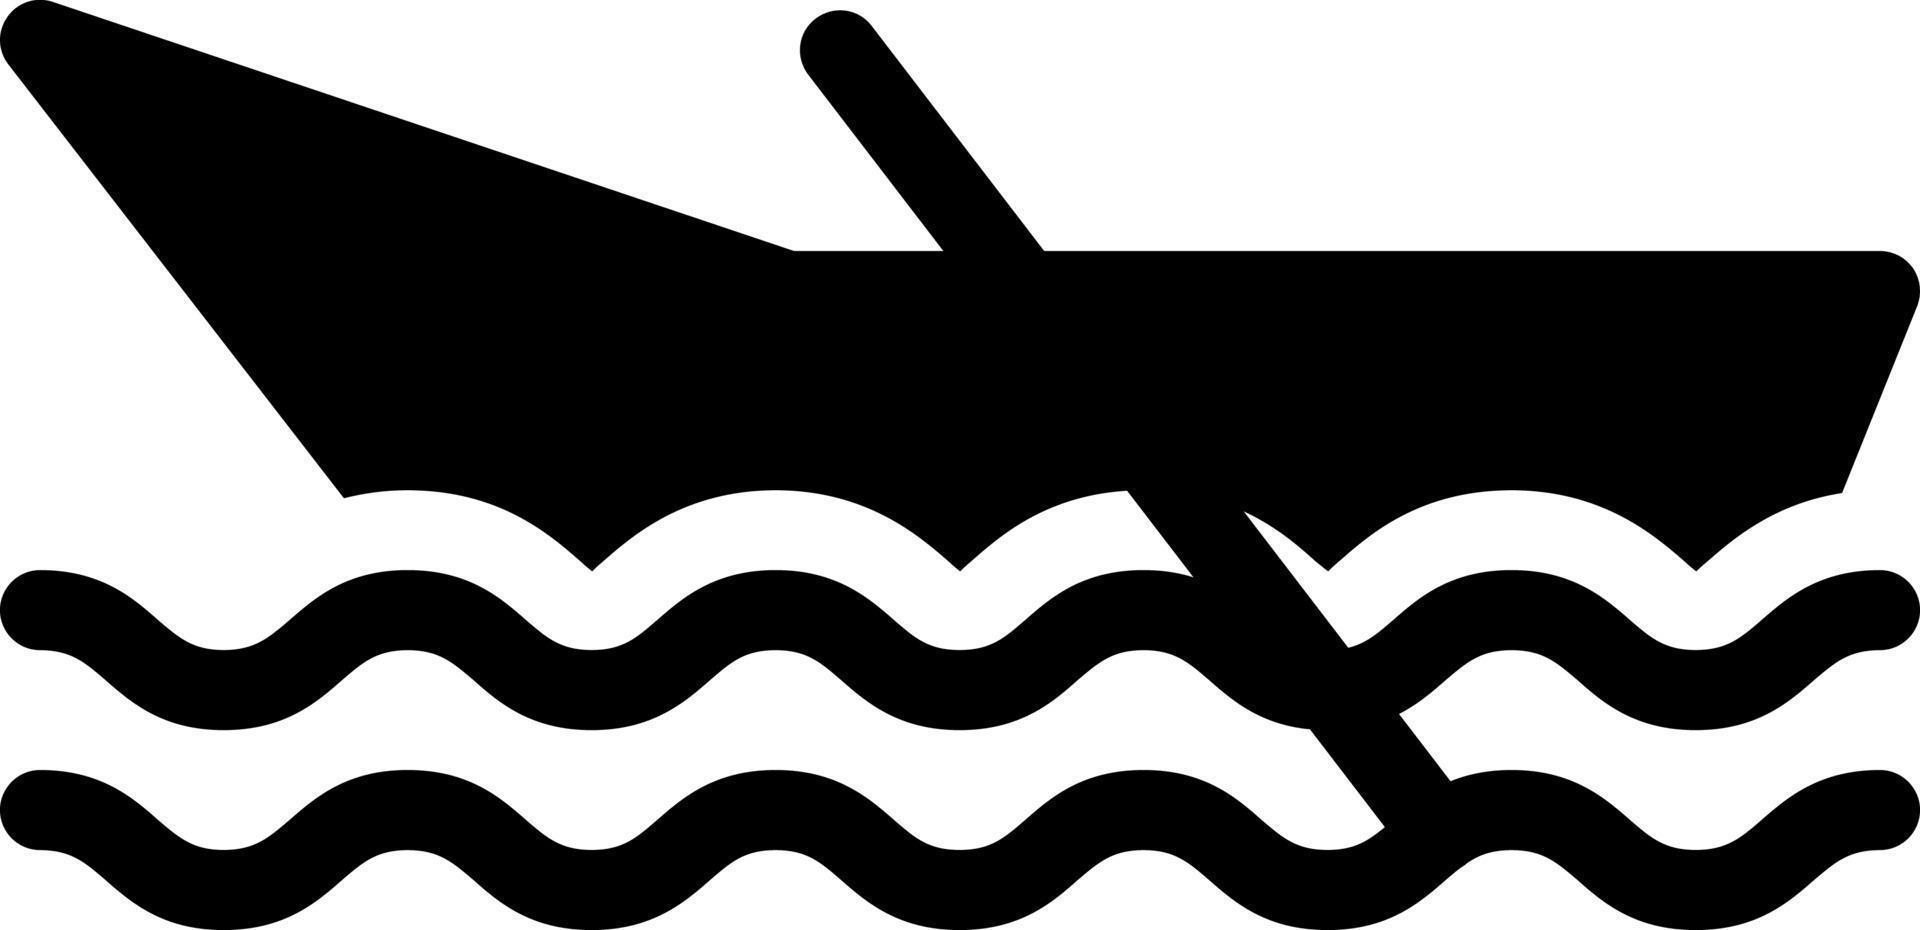 Boot-Vektor-Illustration auf einem Hintergrund. hochwertige Symbole. Vektor-Icons für Konzept und Grafikdesign. vektor